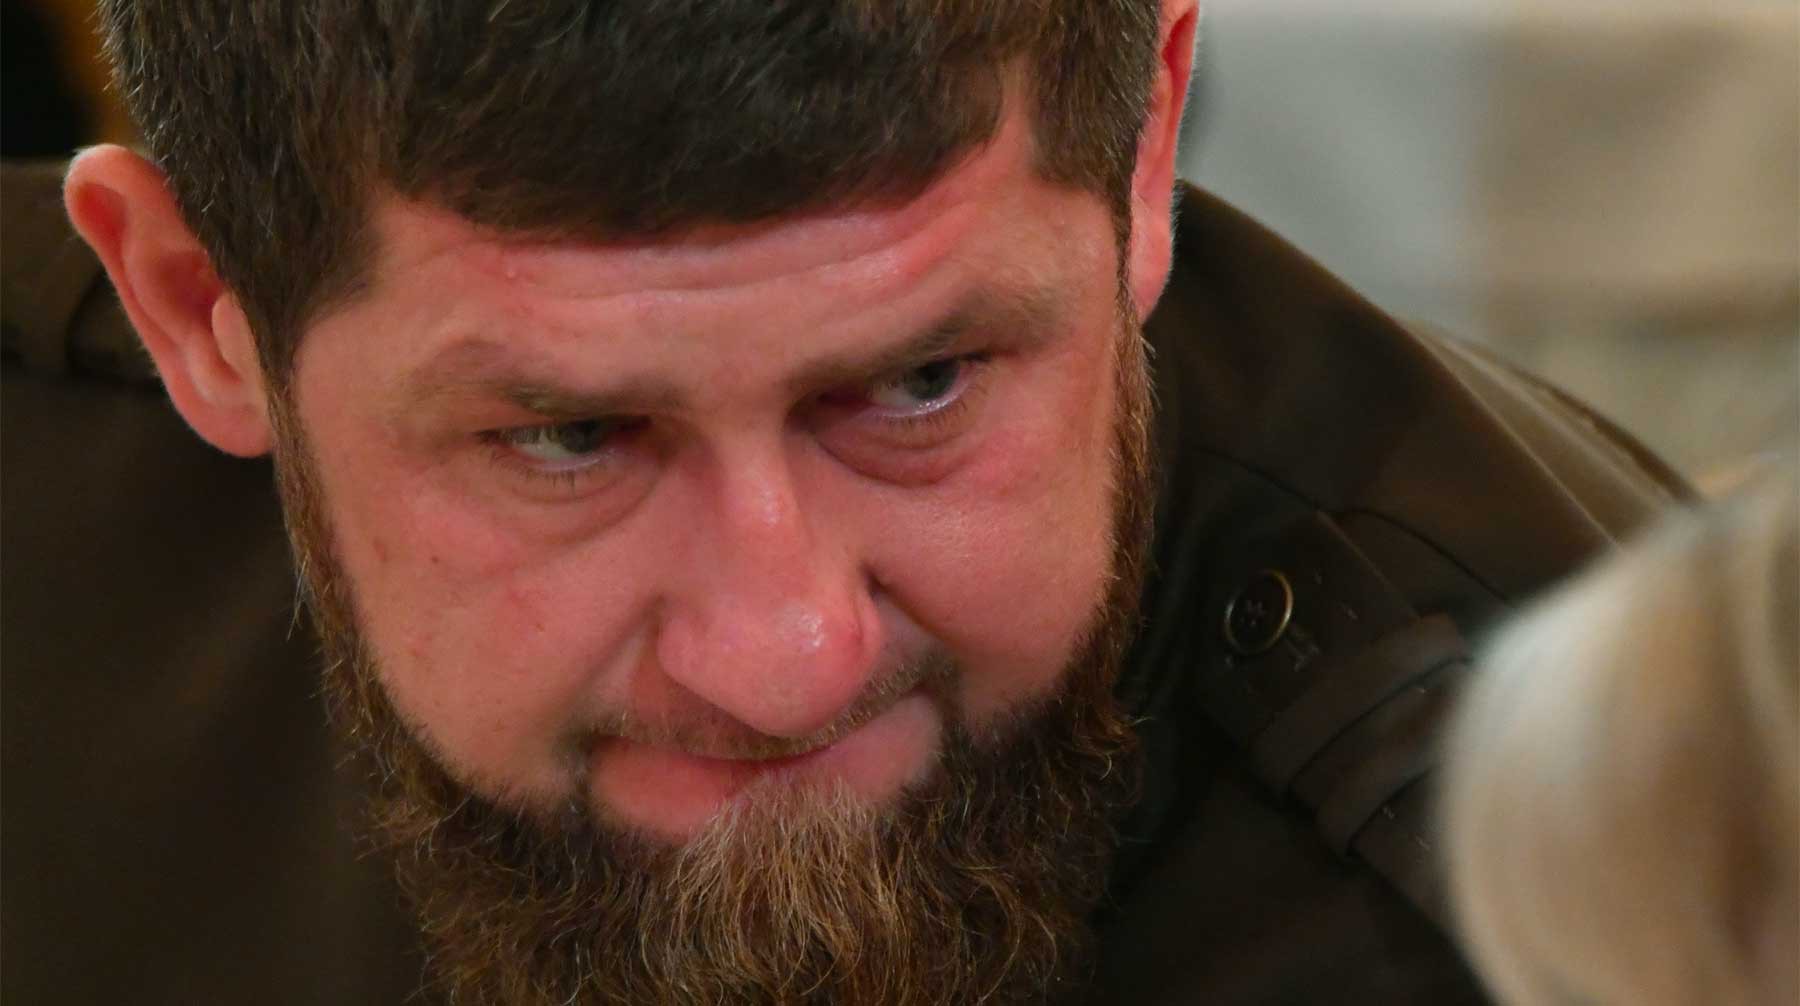 Dailystorm - «Мразь и подонок!»: Кадыров резко осудил телеведущего Габунию за брань в адрес Путина